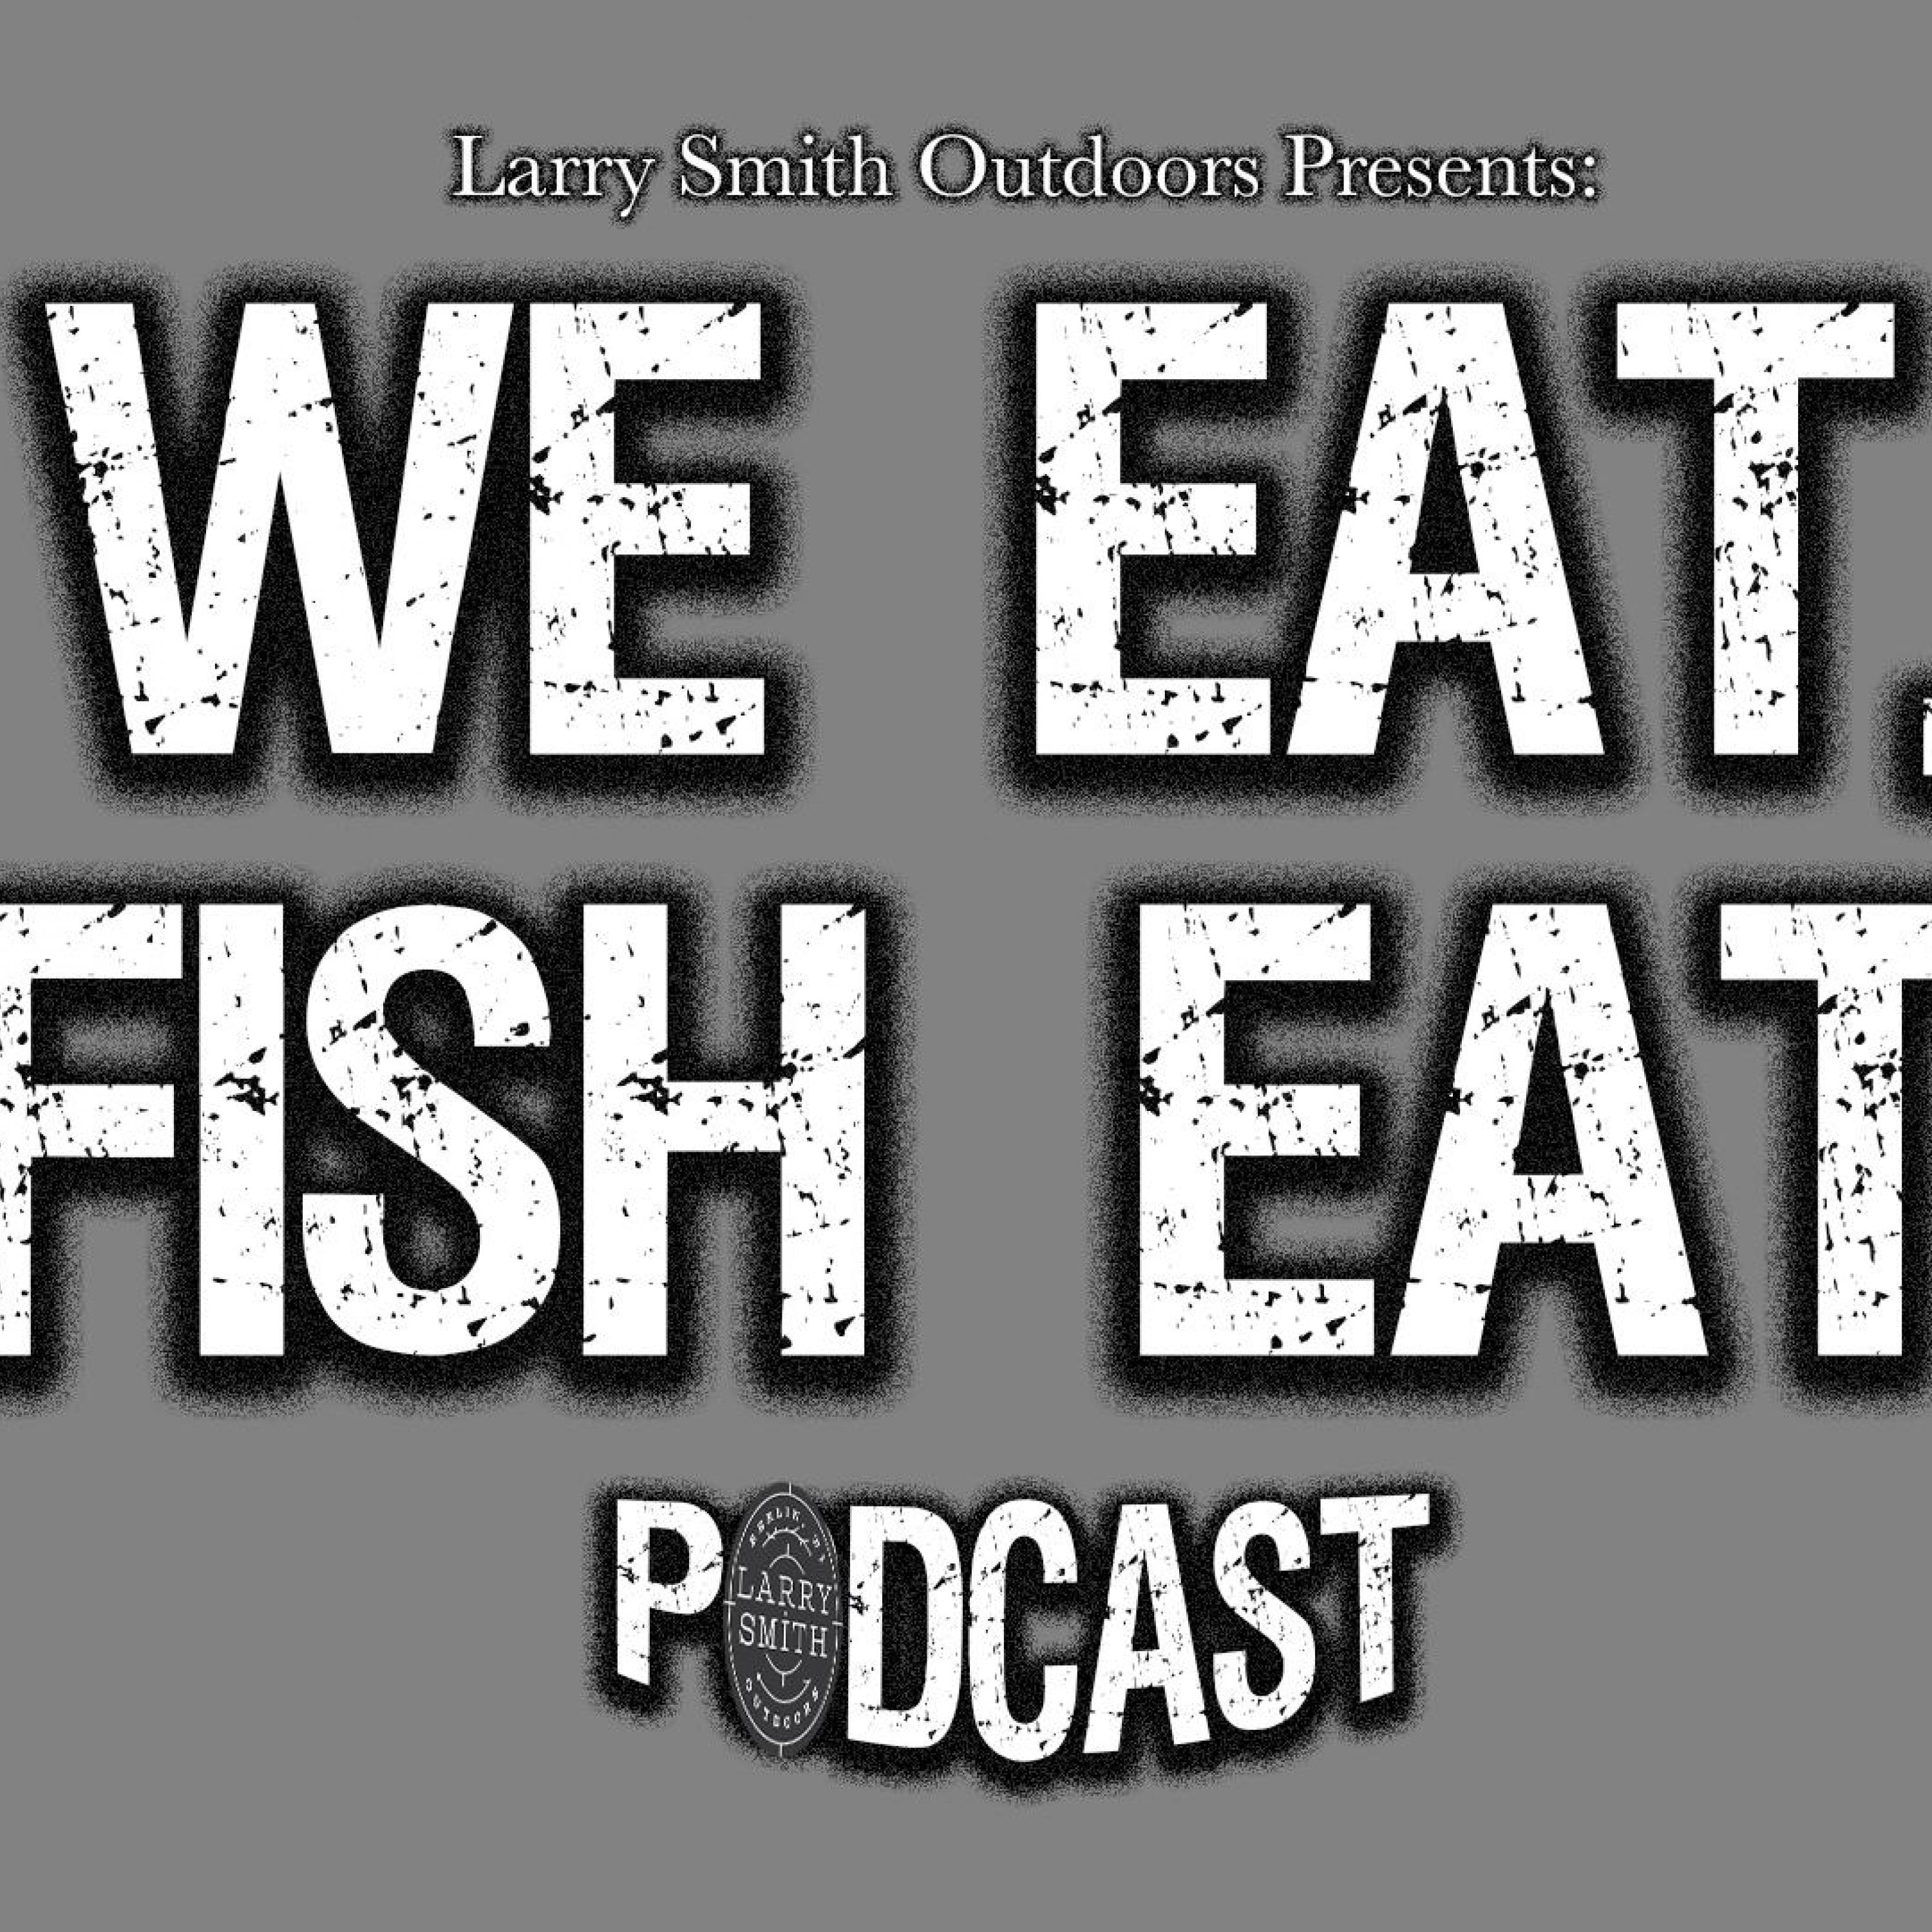 We Eat. Fish Eat.